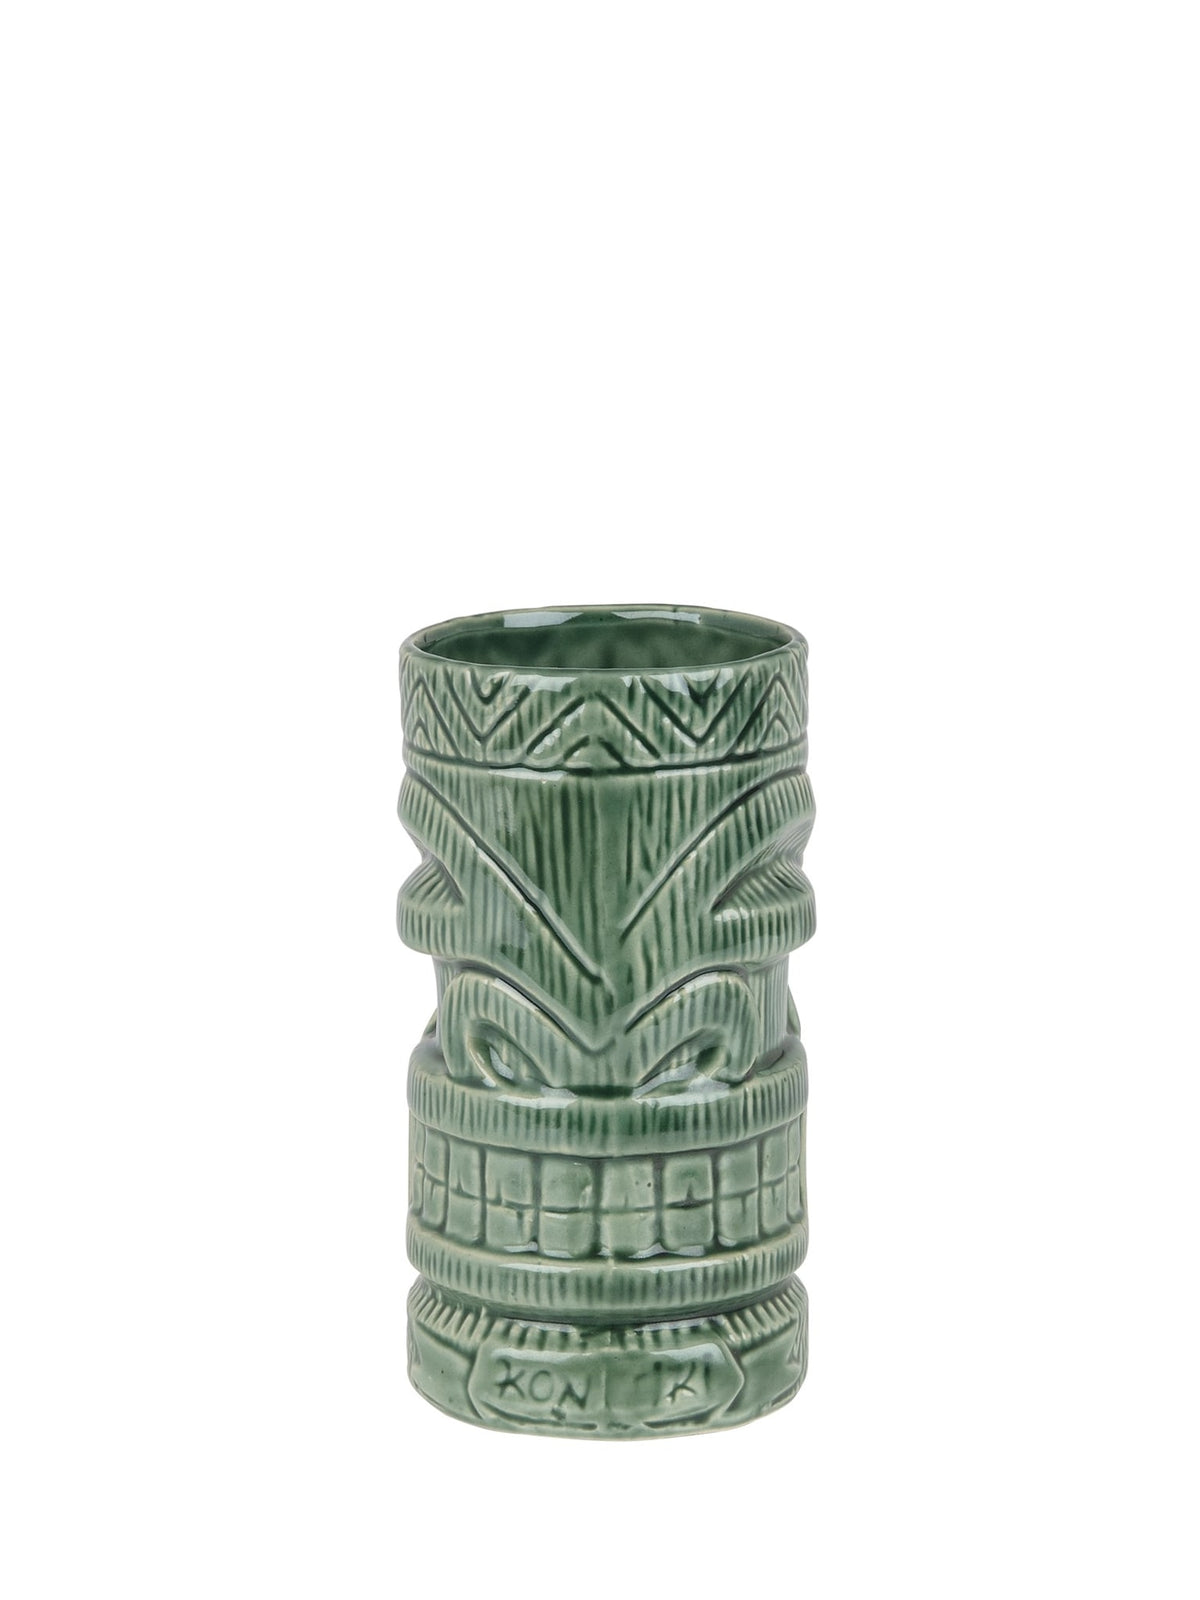 Tiki-mugge formet som en Kon med en kapacitet på 630 ml - perfekt til tropiske drinks.